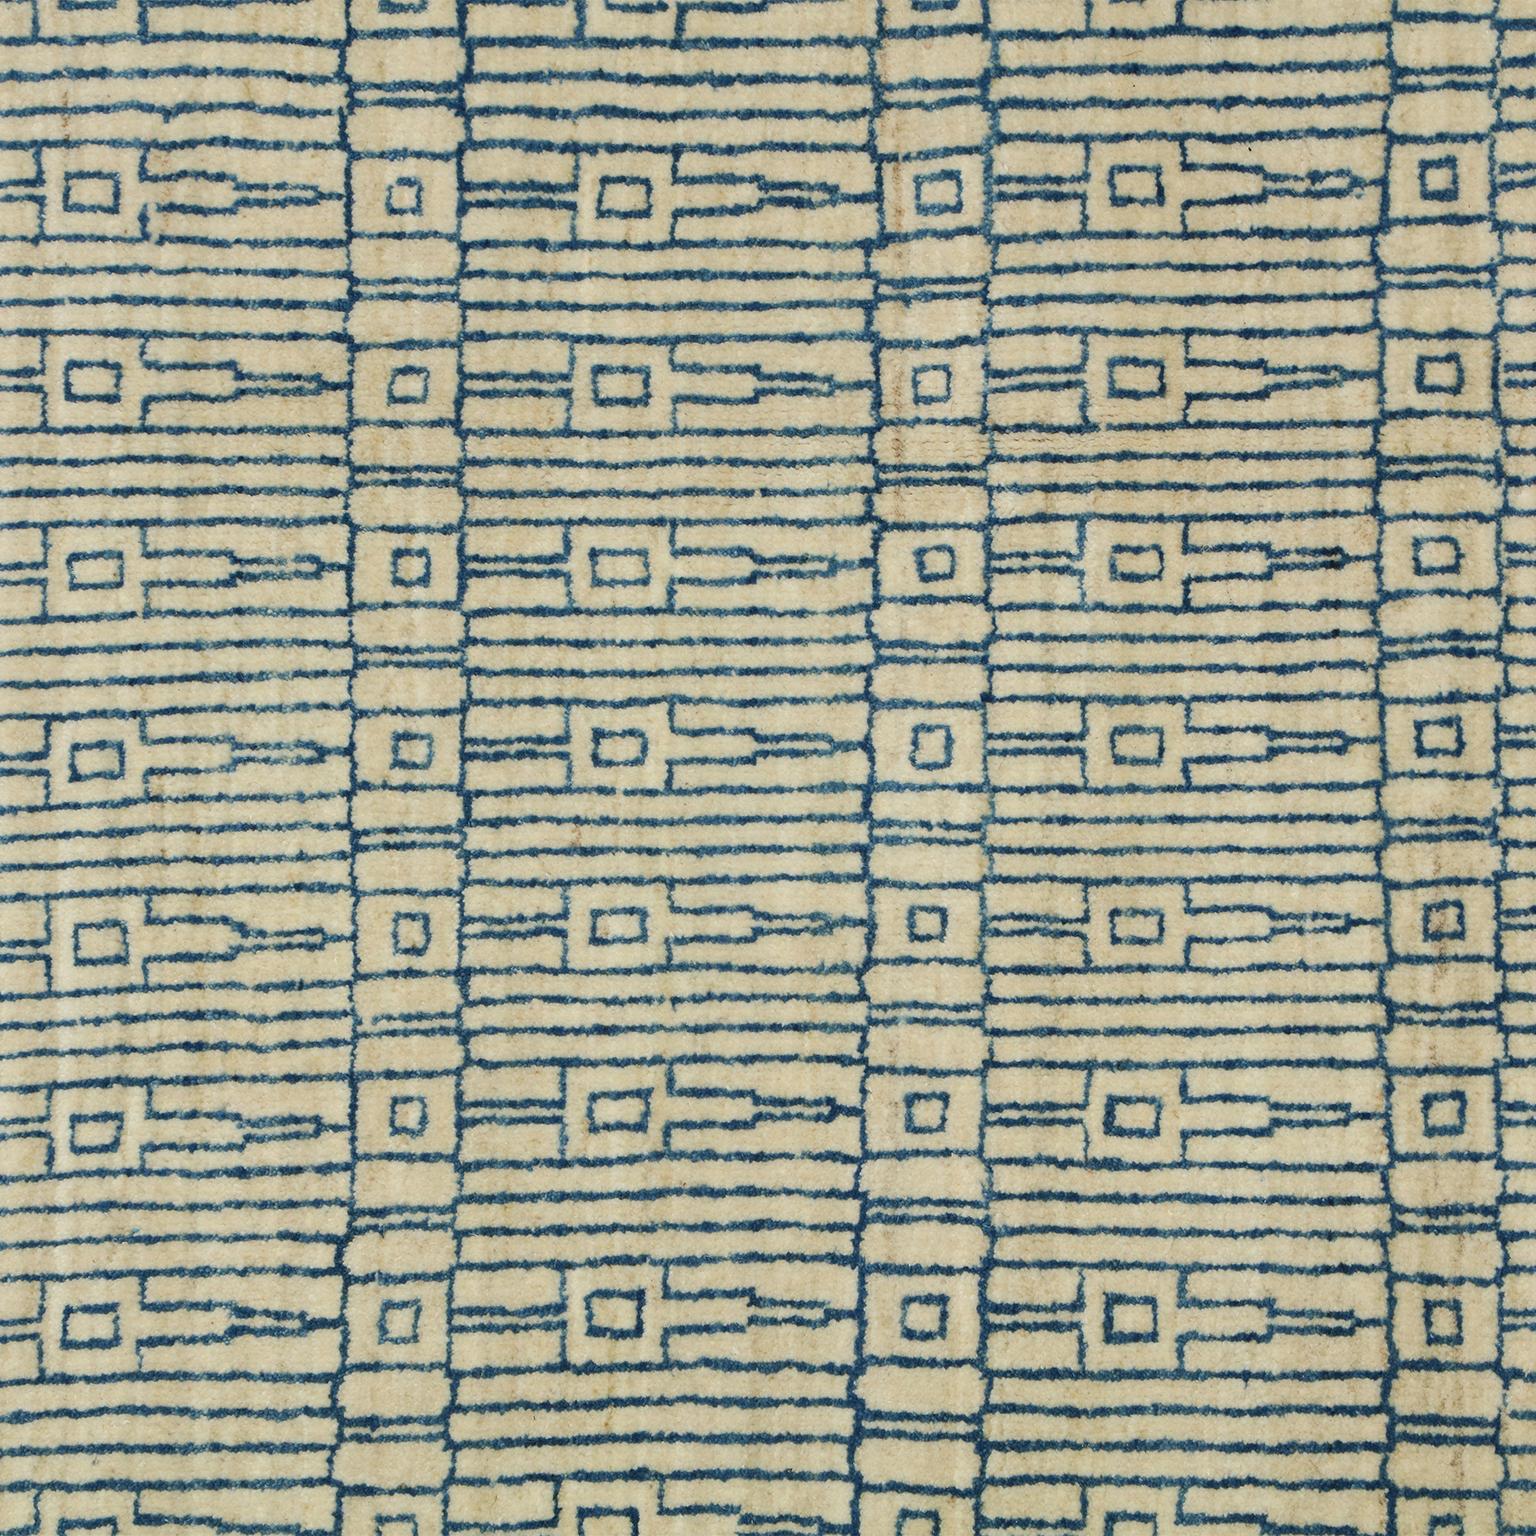 Ce tapis moderne, avec un design architectural en bleu sur fond crème, utilise de la laine filée à la main et des teintures végétales. Ce tapis en pure laine, créé par les artisans d'Orley Shabahang, mesure environ 8' x 10', une taille polyvalente